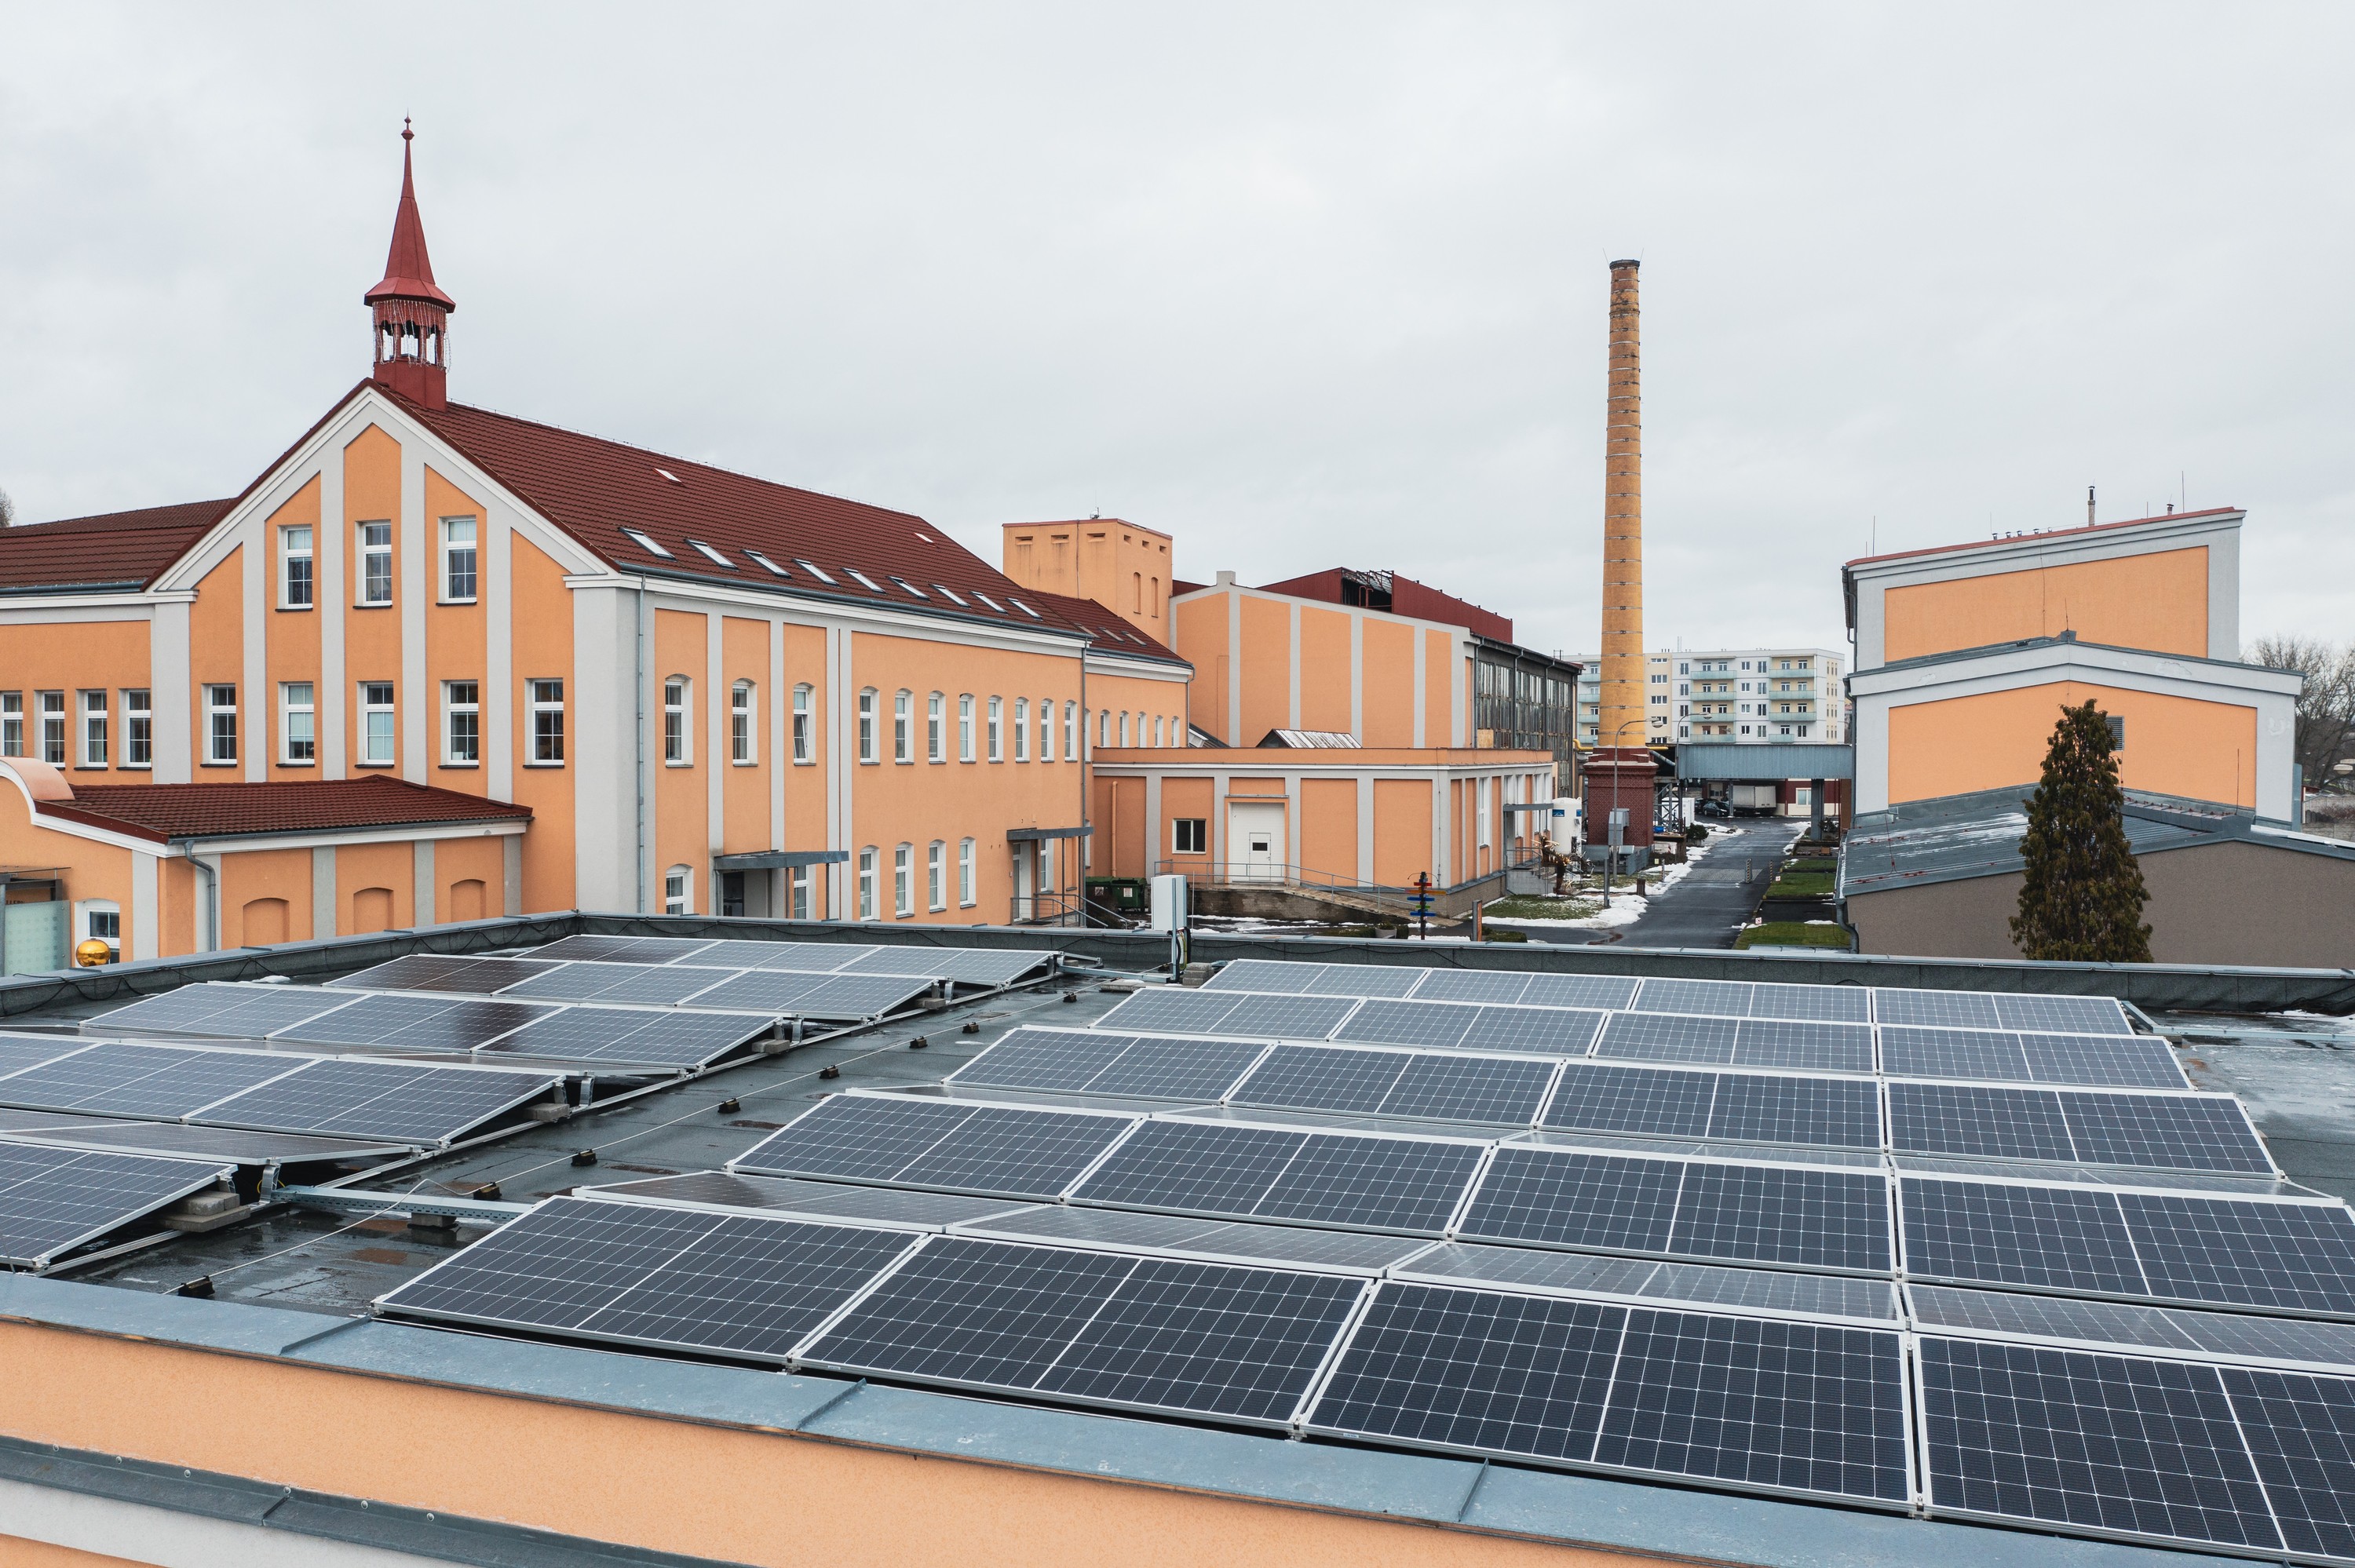 Baterie z českých elektroaut nacházejí uplatnění: Přes 60 % spotřeby elektřiny pokryje sklárna Moser z fotovoltaiky s baterií od ČEZ ESCO